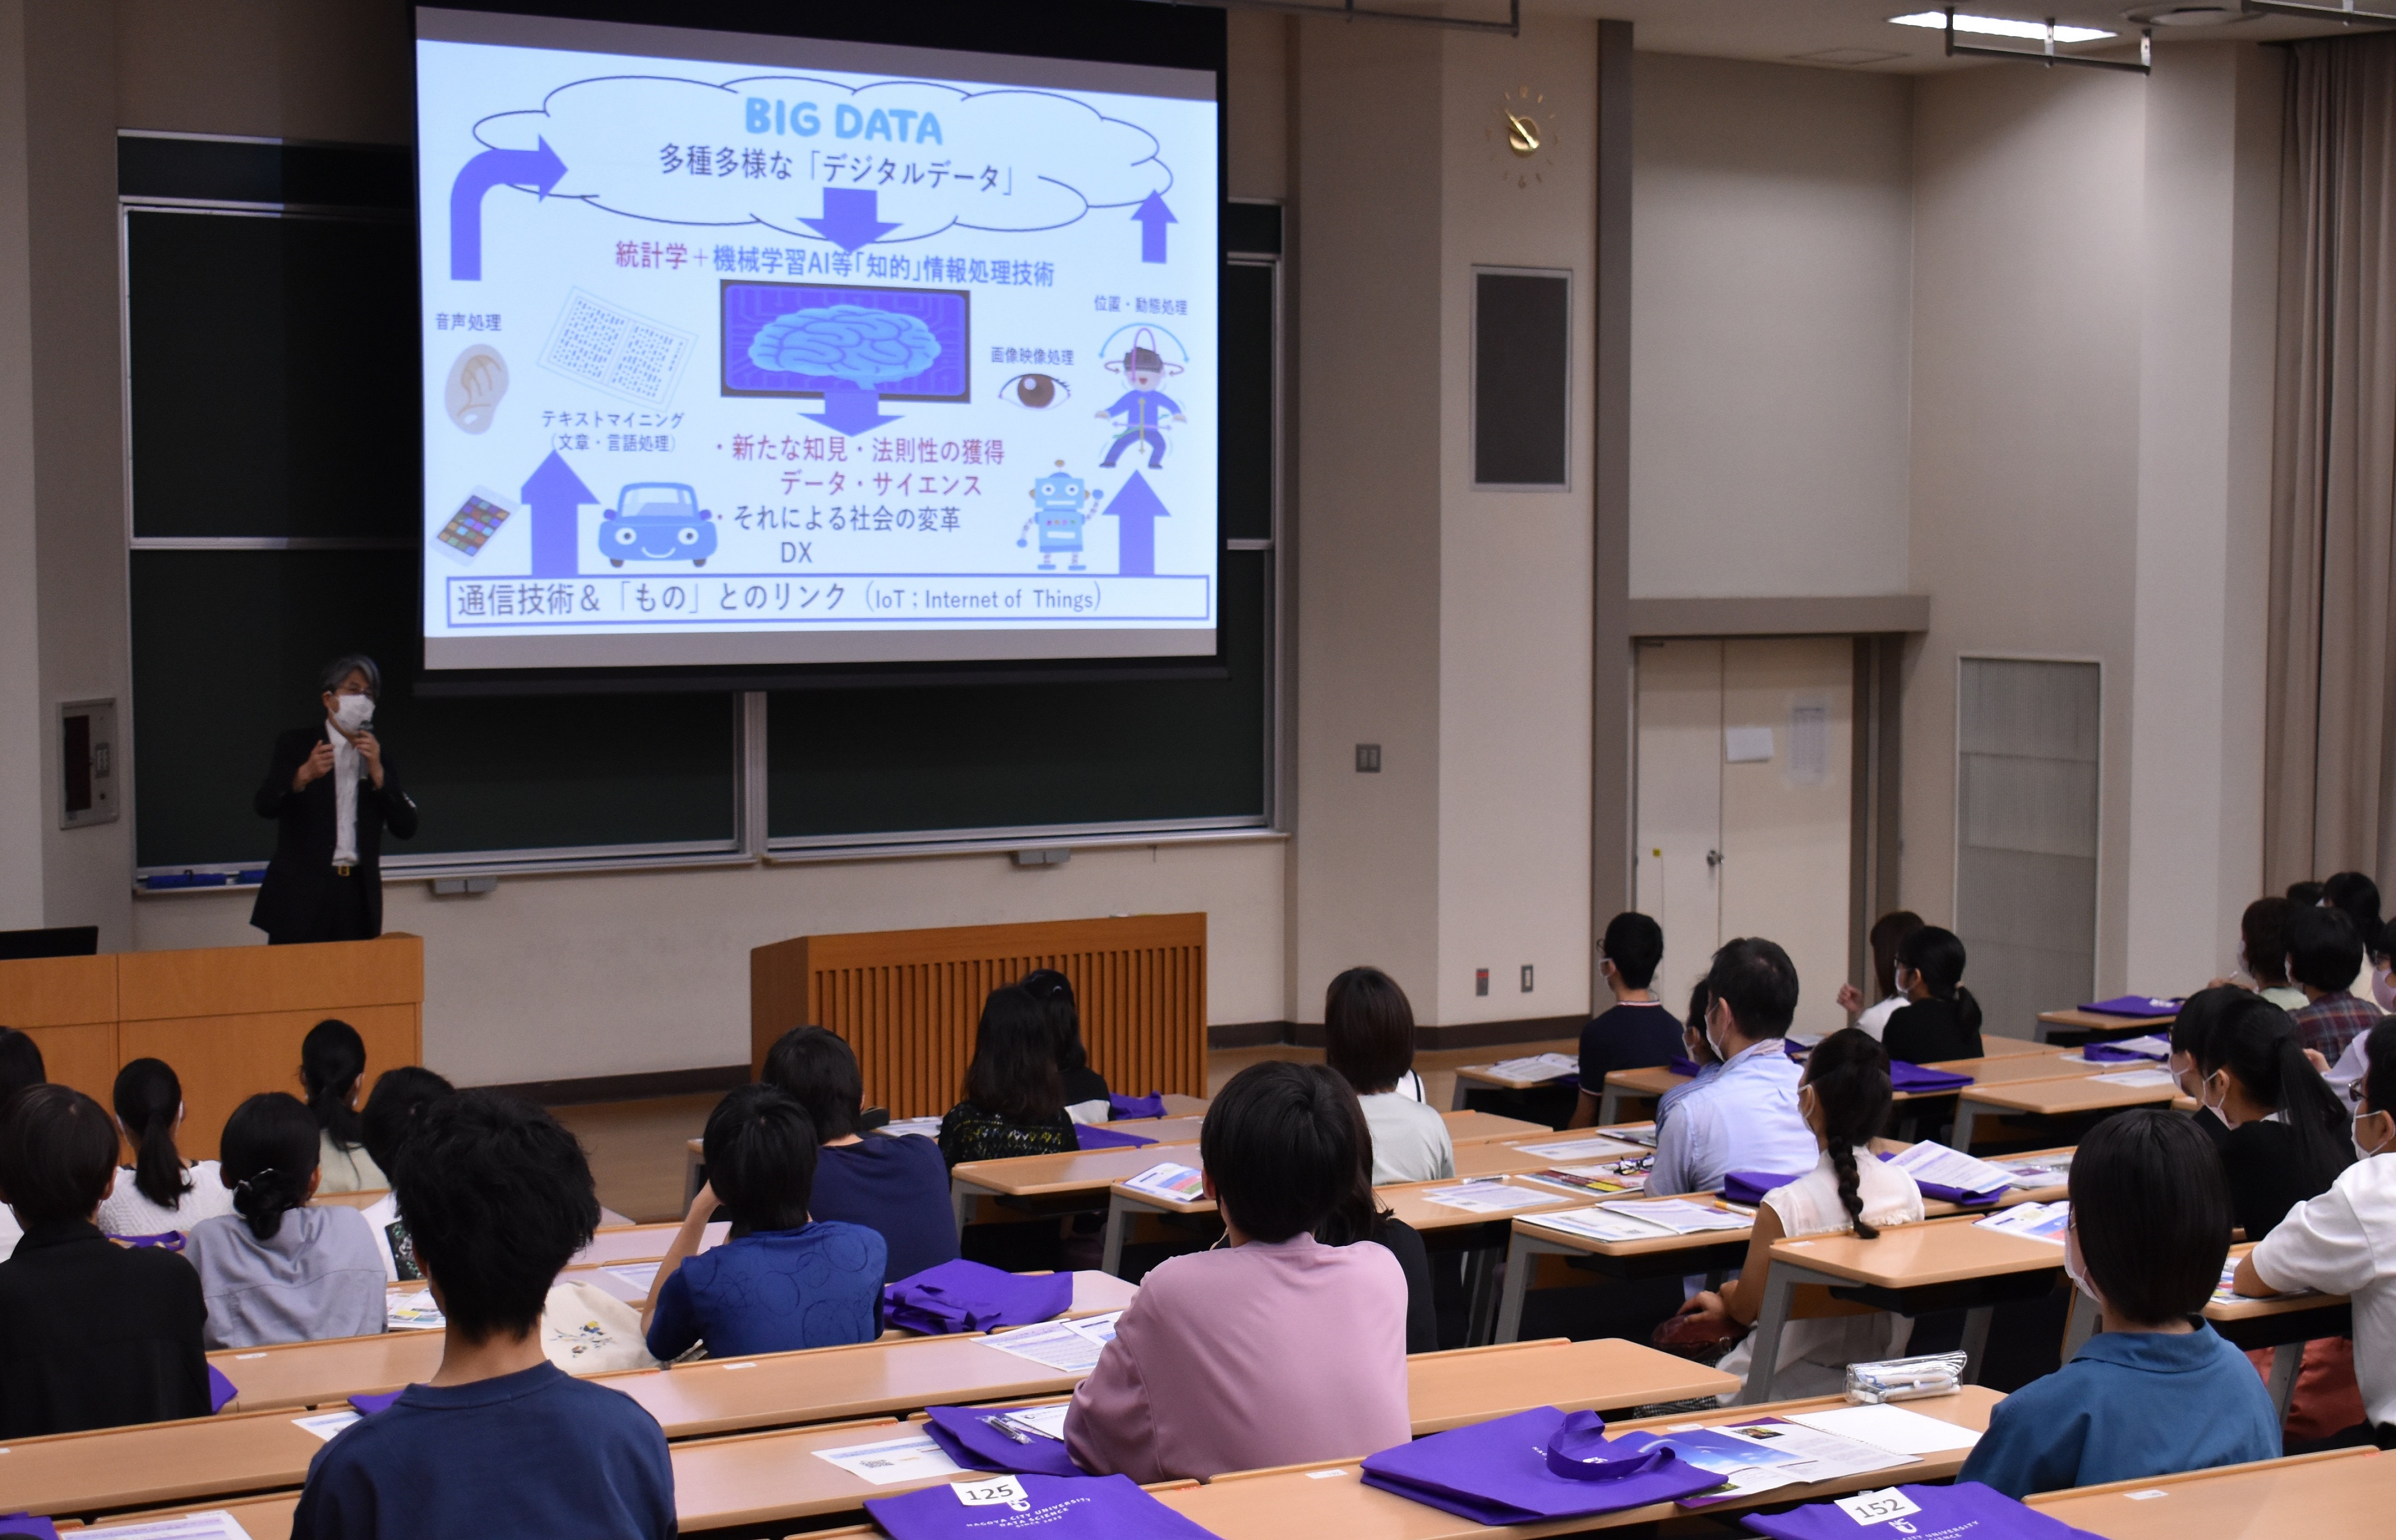 オープンキャンパスでデータサイエンスについて解説する三澤教授